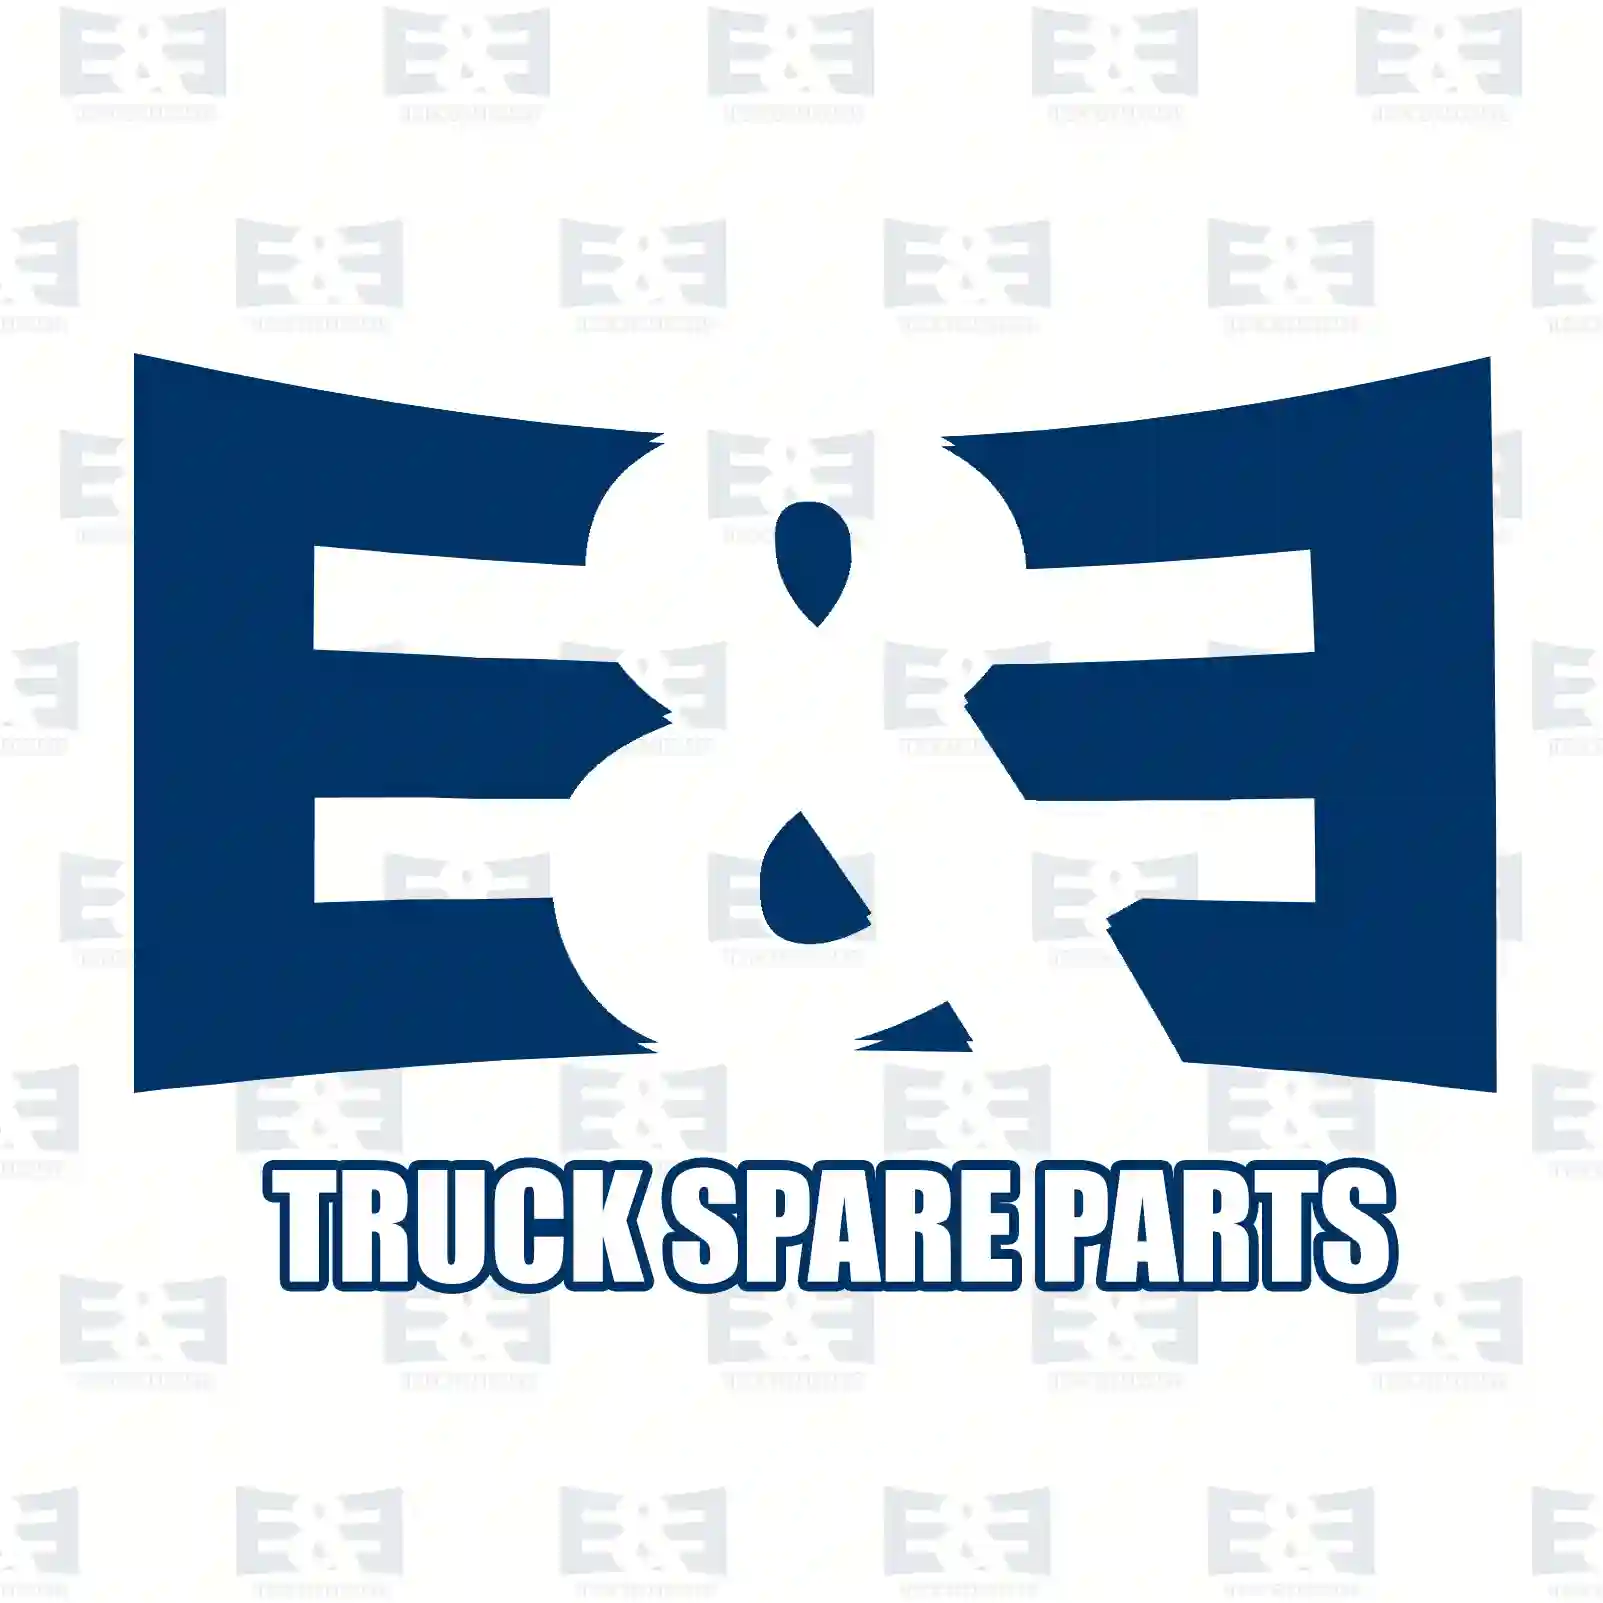 Belt tensioner, 2E2203742, 1120687, 1131255, 1132644, 2S7E-6A228-AA, XS7E-6A228-BC ||  2E2203742 E&E Truck Spare Parts | Truck Spare Parts, Auotomotive Spare Parts Belt tensioner, 2E2203742, 1120687, 1131255, 1132644, 2S7E-6A228-AA, XS7E-6A228-BC ||  2E2203742 E&E Truck Spare Parts | Truck Spare Parts, Auotomotive Spare Parts